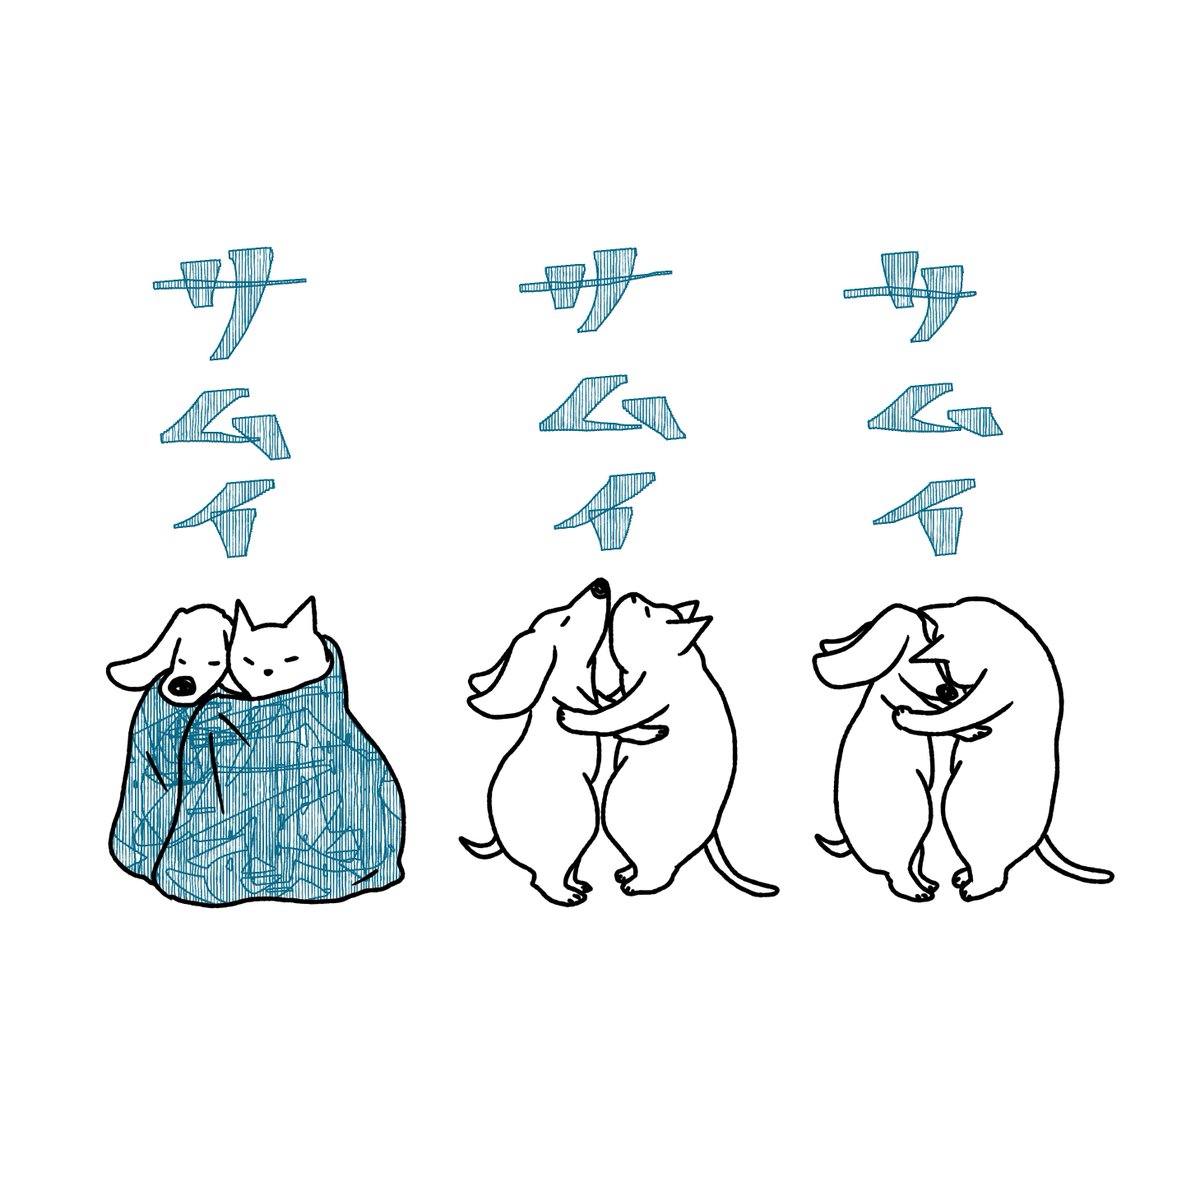 石川ともこ 今日も寒い Illustration イラスト Cat 猫 ねこ しろさん 犬 Dog ペット 動物 晴れ 寒い